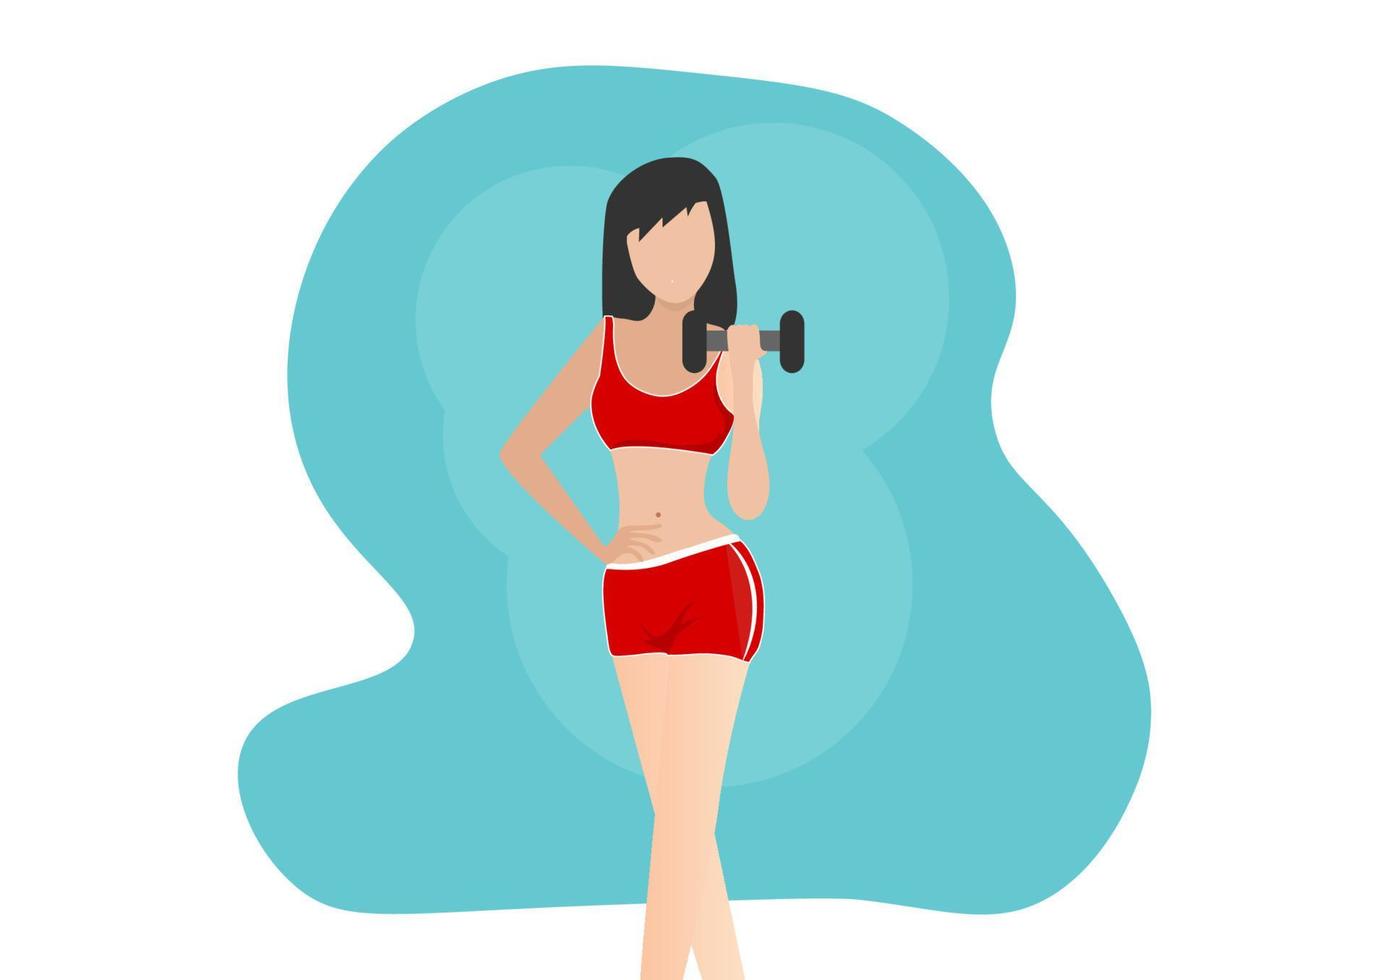 vrouw doet oefening met sportuitrusting om te oefenen met gewichtheffen metalen halter gezonde levensstijl vector illustratie cartoon karakter plat ontwerp